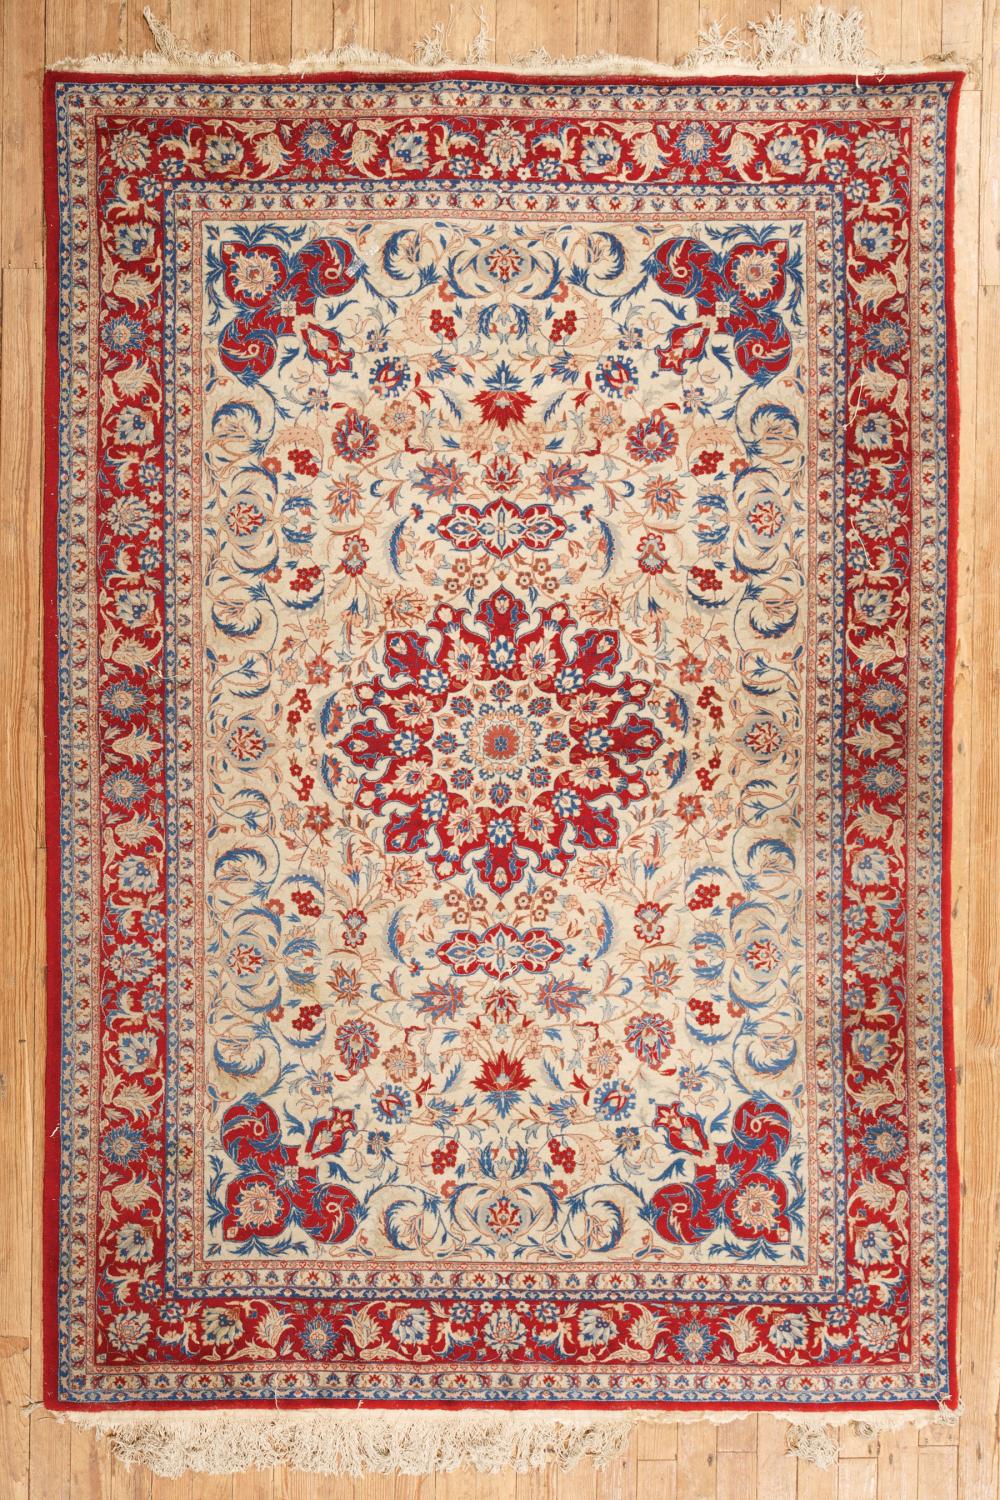 PERSIAN CARPETPersian Carpet , cream